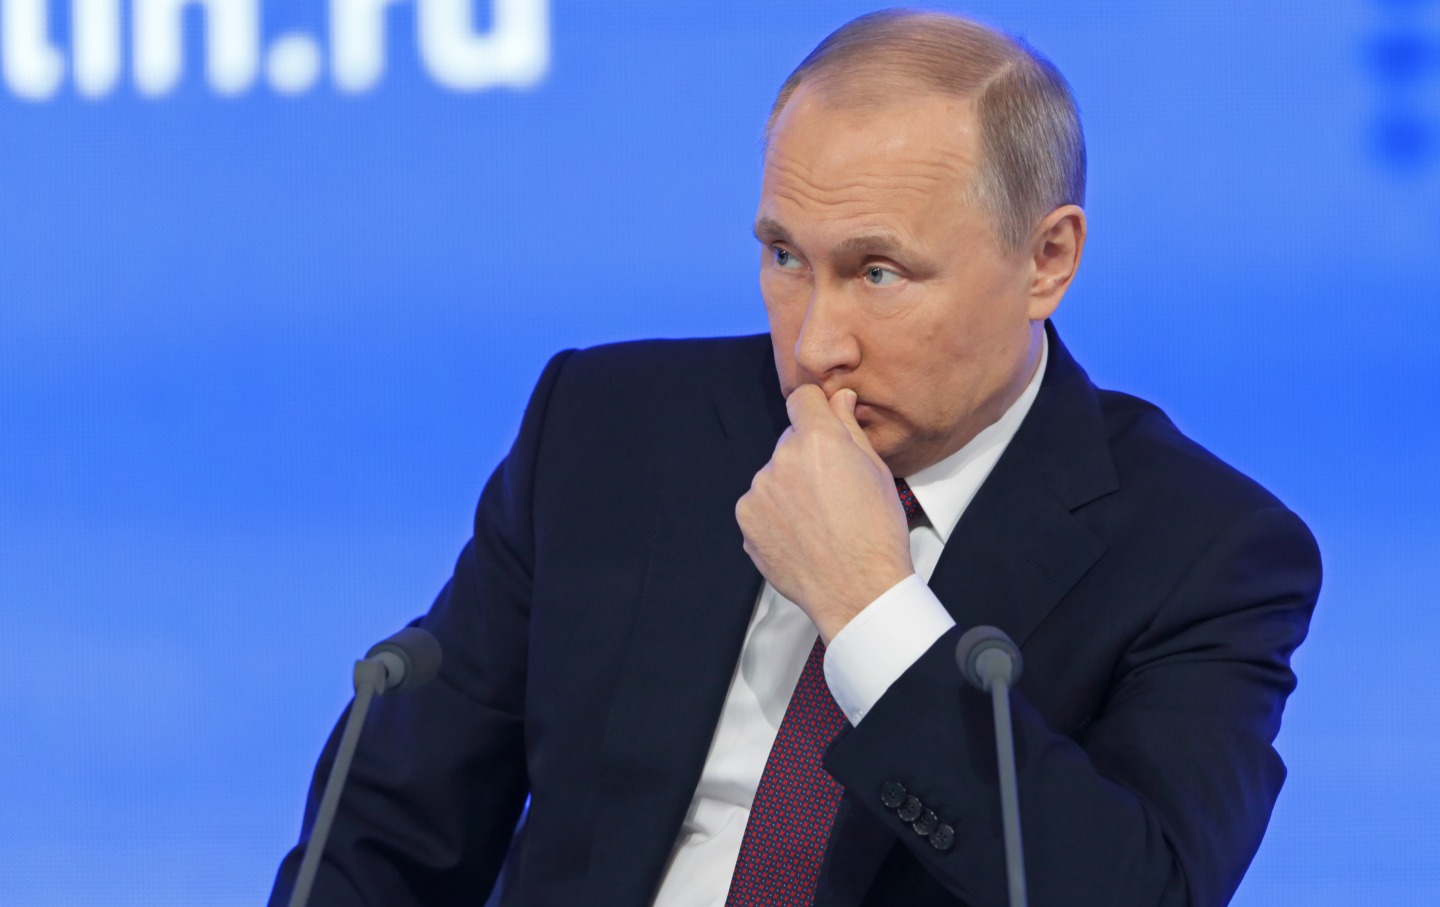 Β.Πούτιν: «Το Κρατικό Συμβούλιο κατέχει σημαντικό ρόλο στο σύστημα της ρωσικής διακυβέρνησης»